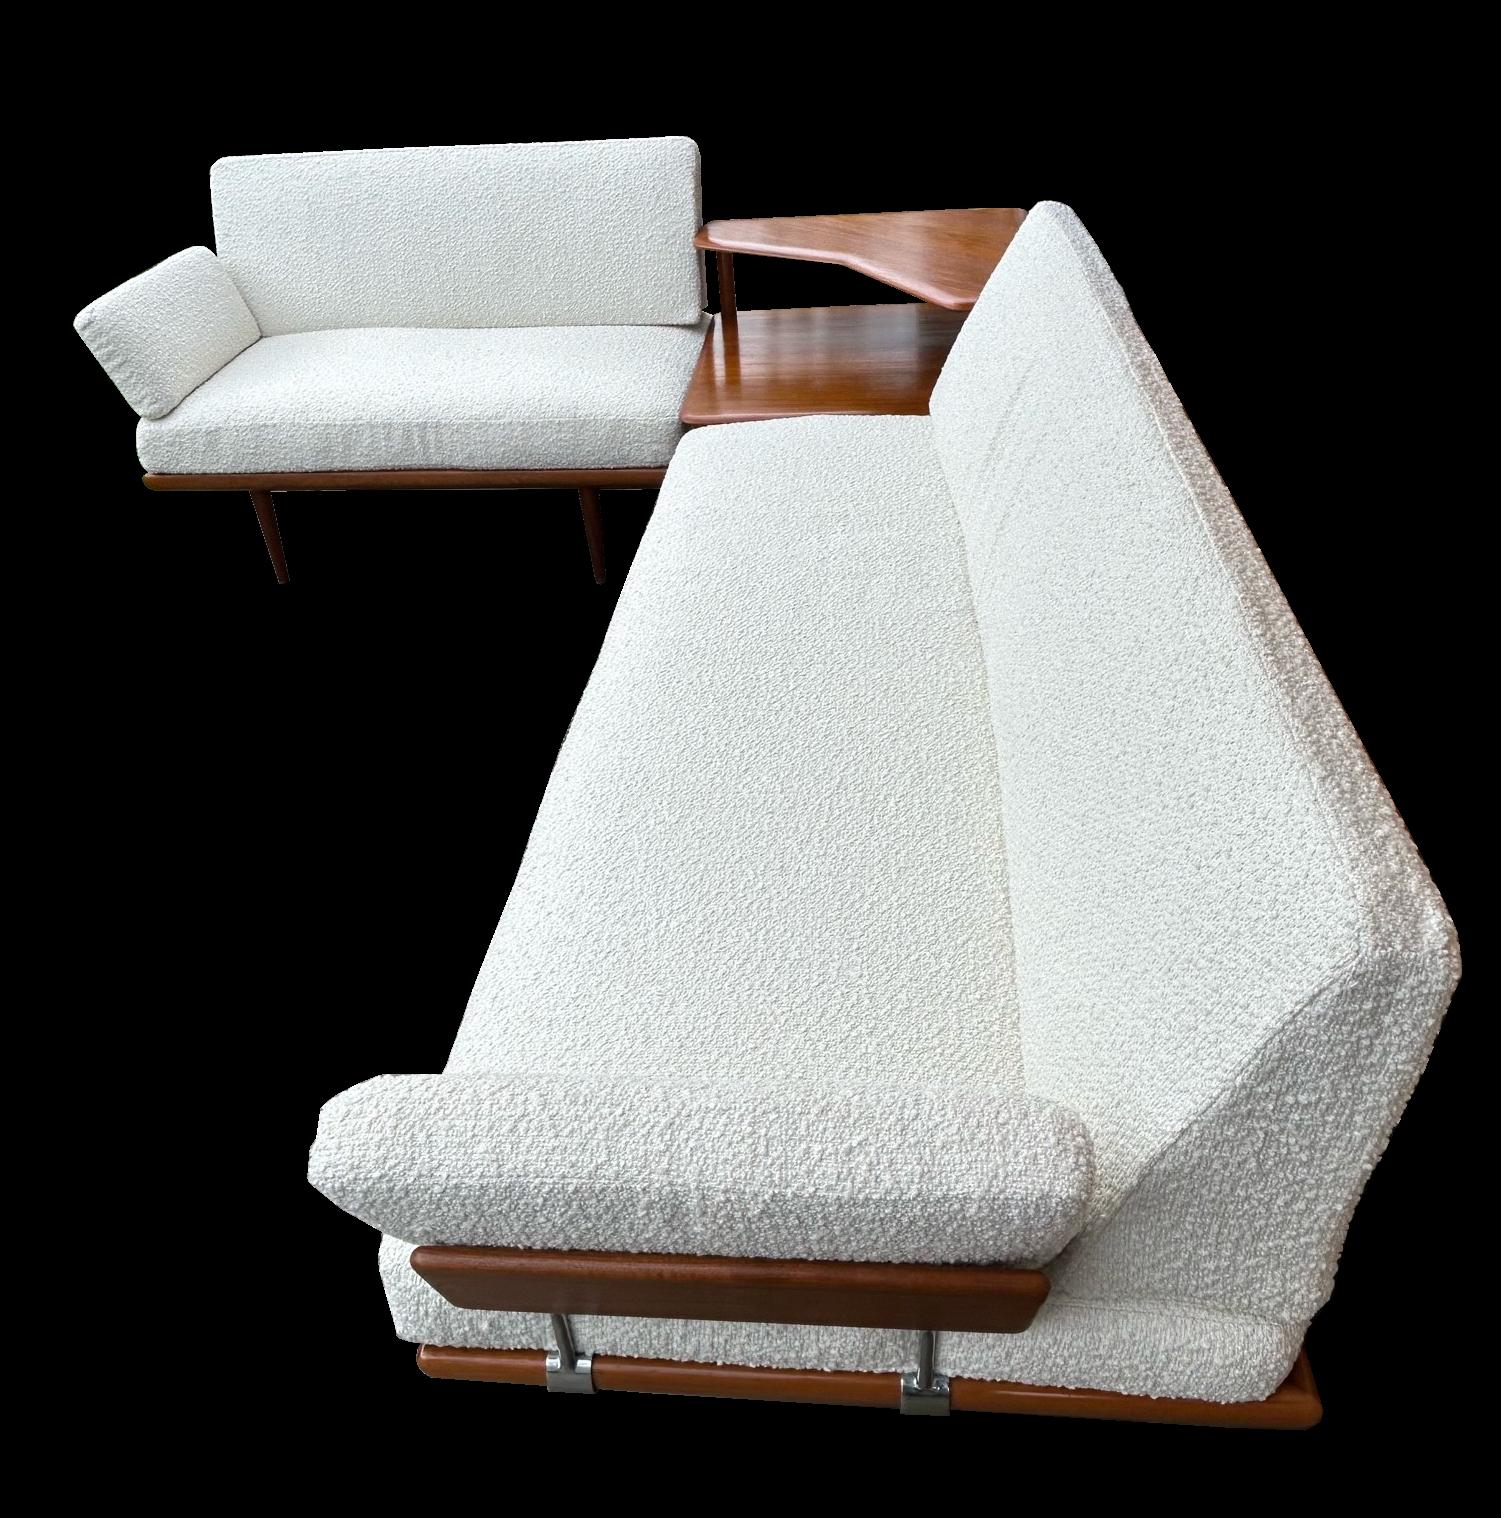 Dies ist eine klassische, originelle Eckgarnitur, bestehend aus einem Dreisitzer-Sofa und einem Zweisitzer-Sofa mit passendem zweistöckigen Ecktisch. Alle sind aus feinstem Teakholz gefertigt und mit frisch gepolsterten weißen Boucle-Kissen